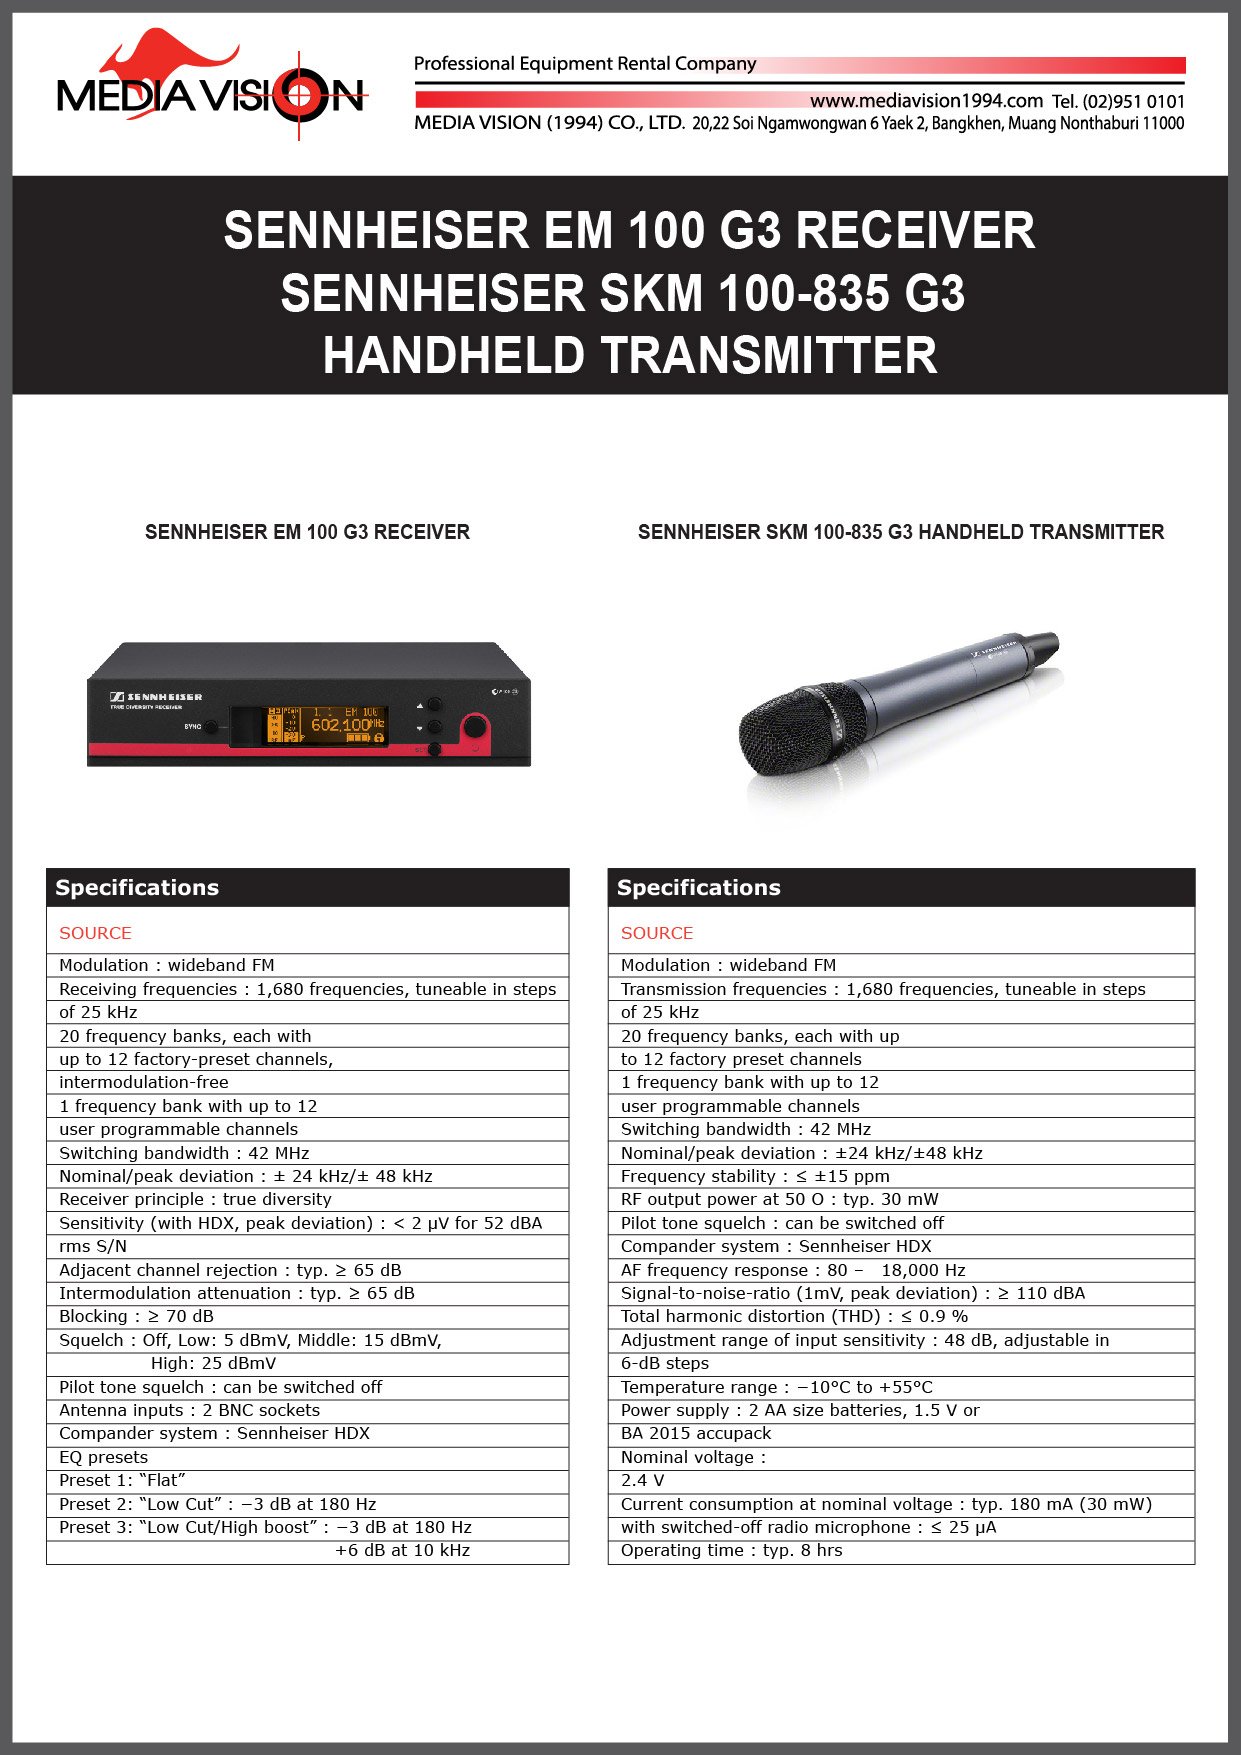 SENNHEISER EM 100 G3 RECEIVER , SENNHEISER SKM 100-835 G3 HANDHELD TRANSMITTER